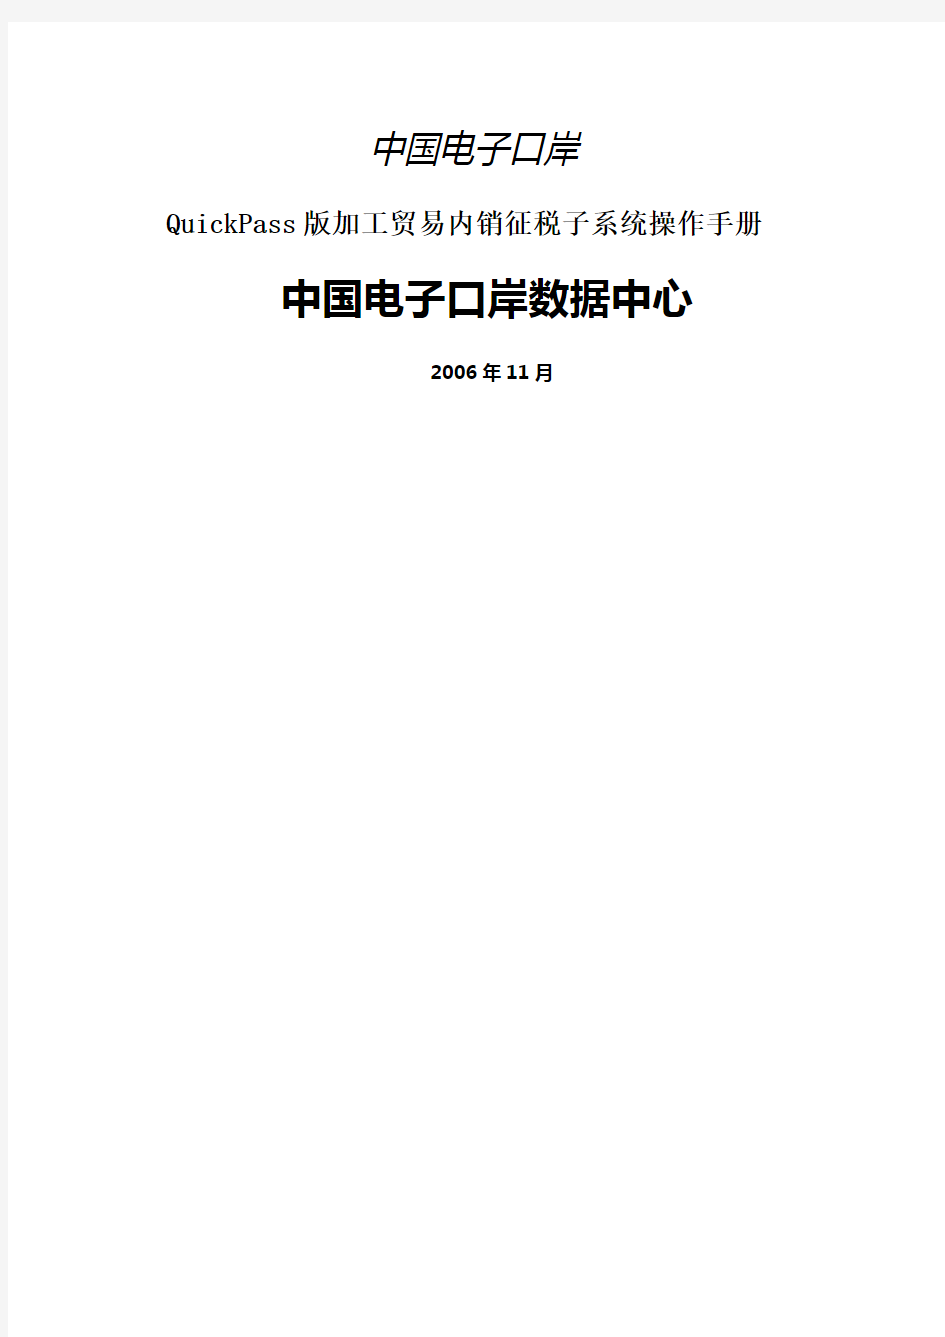 加工贸易内销征税管理系统操作手册-中国电子口岸